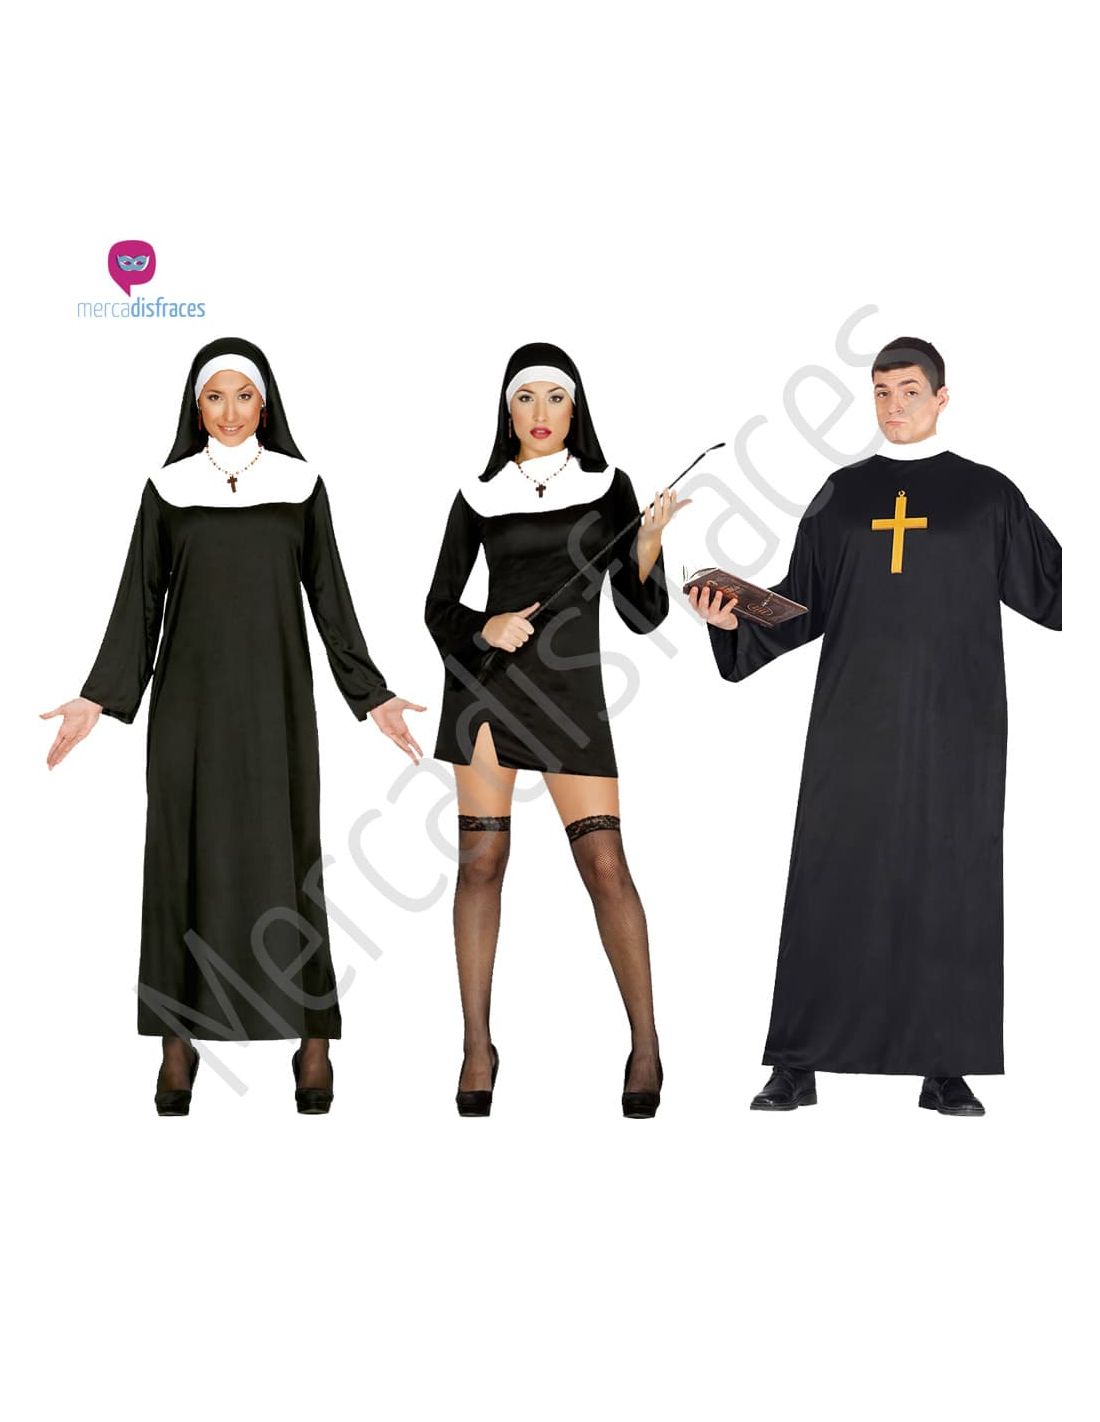 Disfraces divertidos de Religiosos para grupos | Ideas para Disfra...